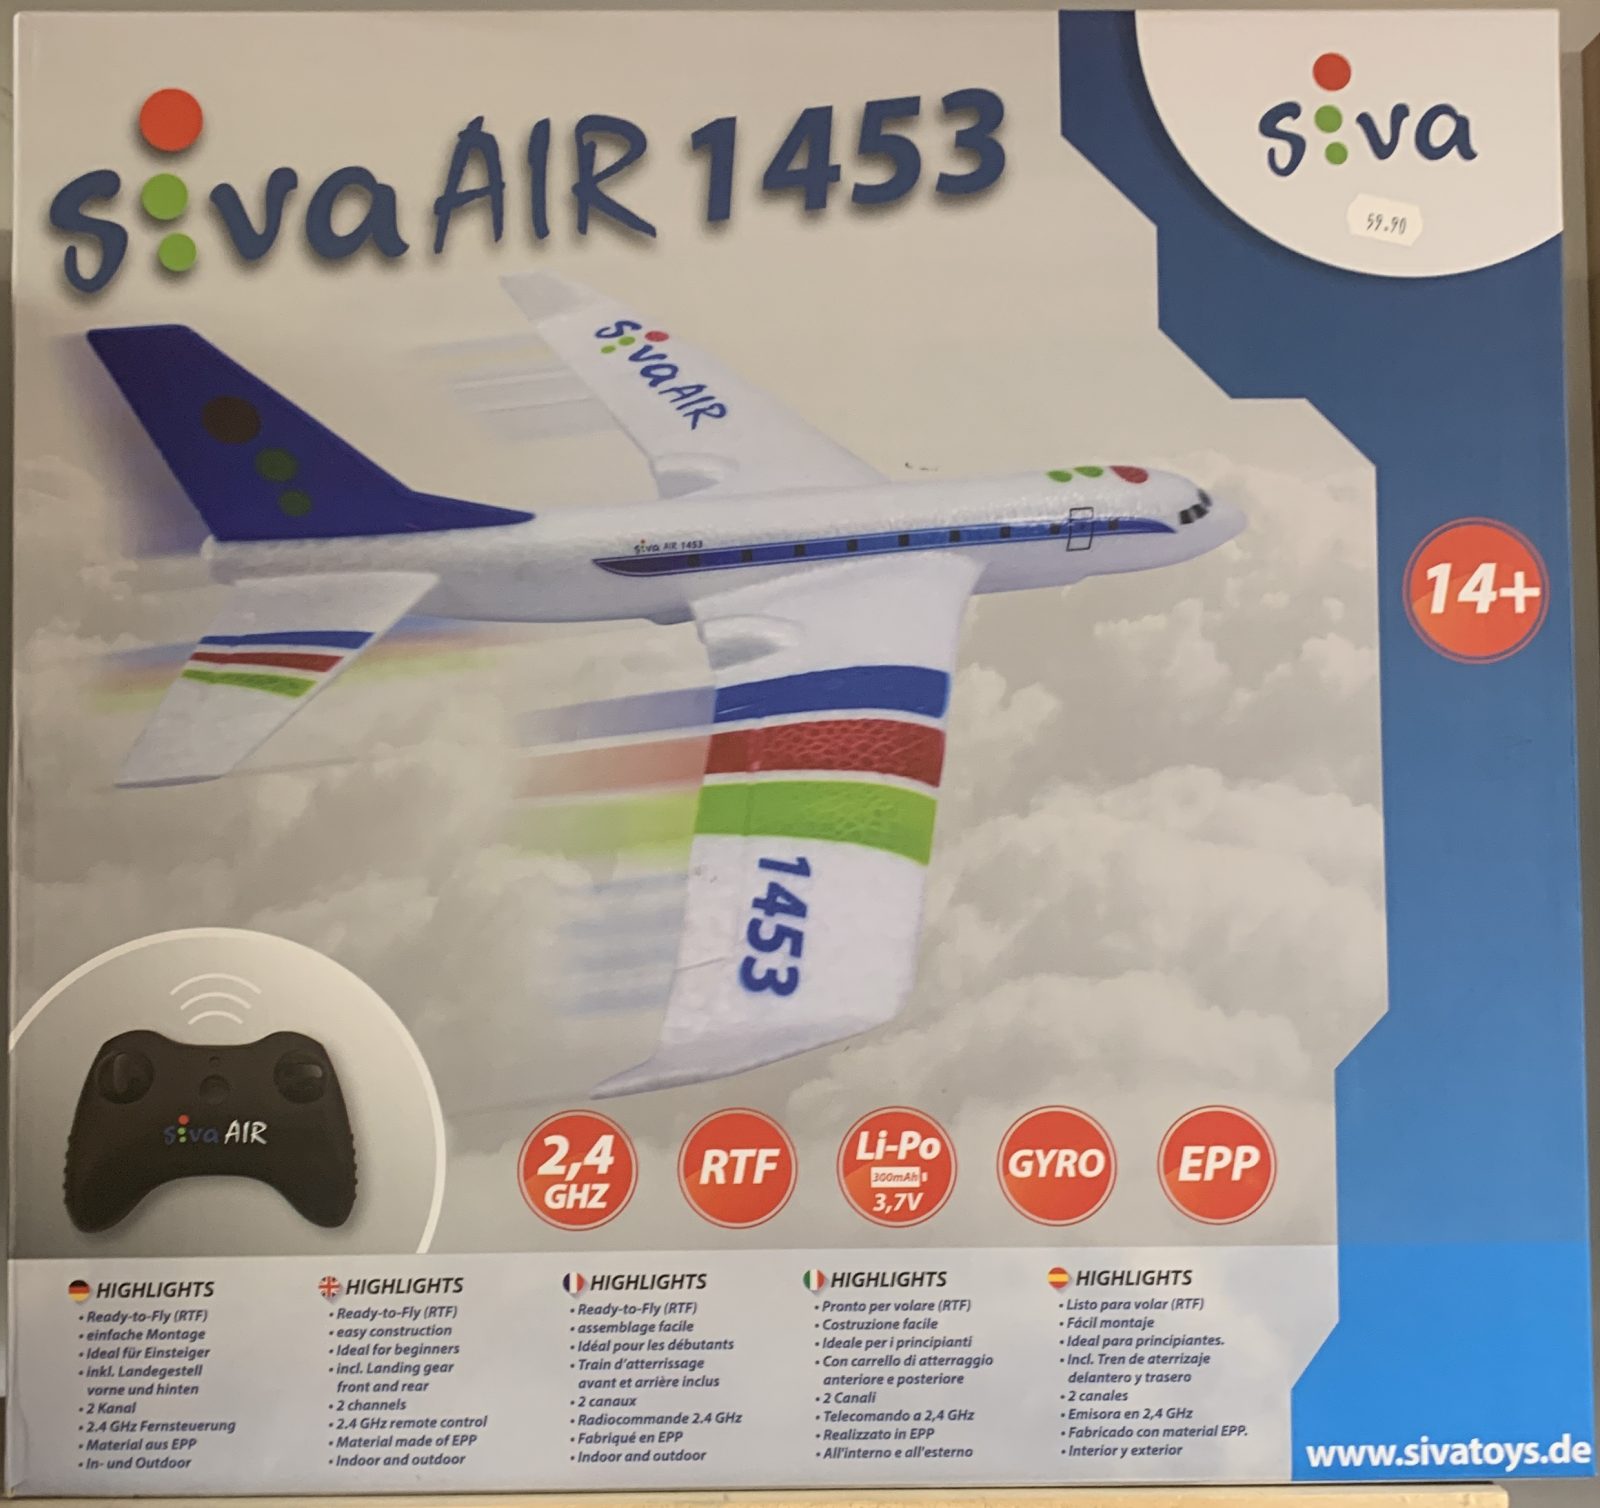 Avion Siva air 1453